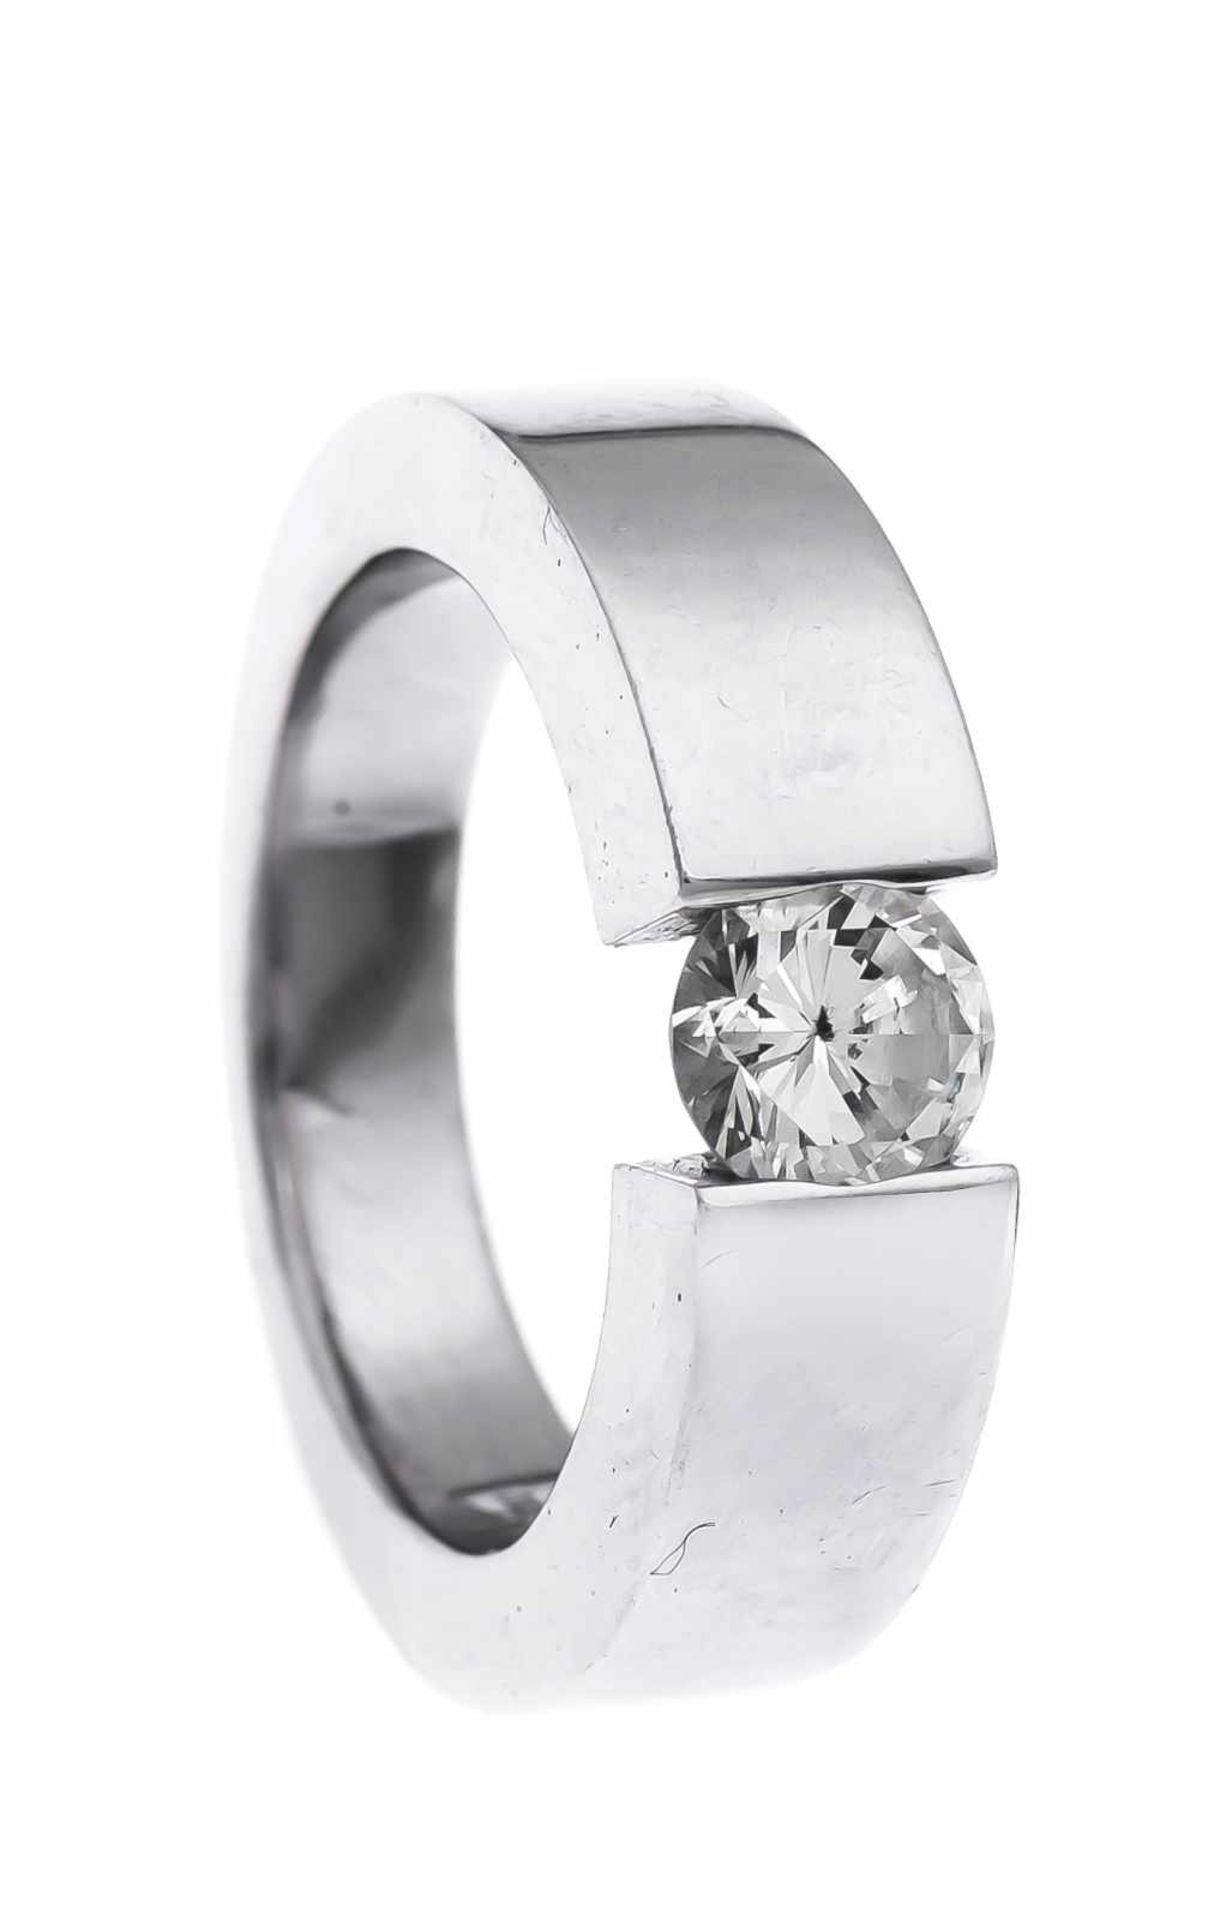 Brillant-Ring WG 750/000 mit einem Brillanten 0,65 ct W/P1, RG 52, 13,0 g